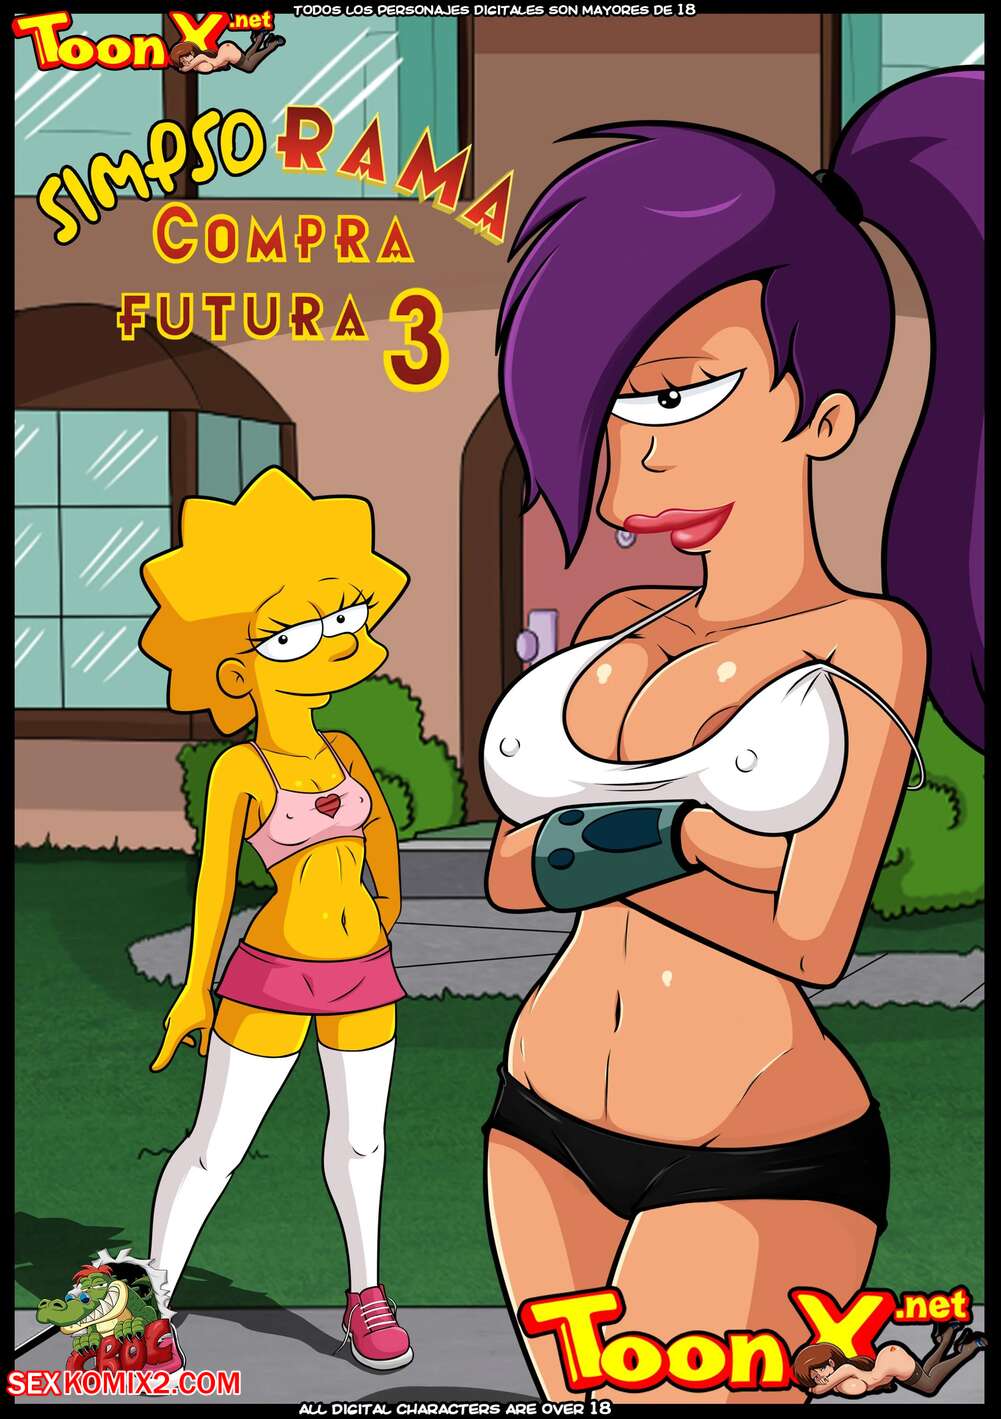 1001px x 1419px - âœ…ï¸ Porn comic SimpsoRama. Chapter 3. The Simpsons , Futurama. Croc. Sex  comic beauty woke up | Porn comics in English for adults only |  sexkomix2.com